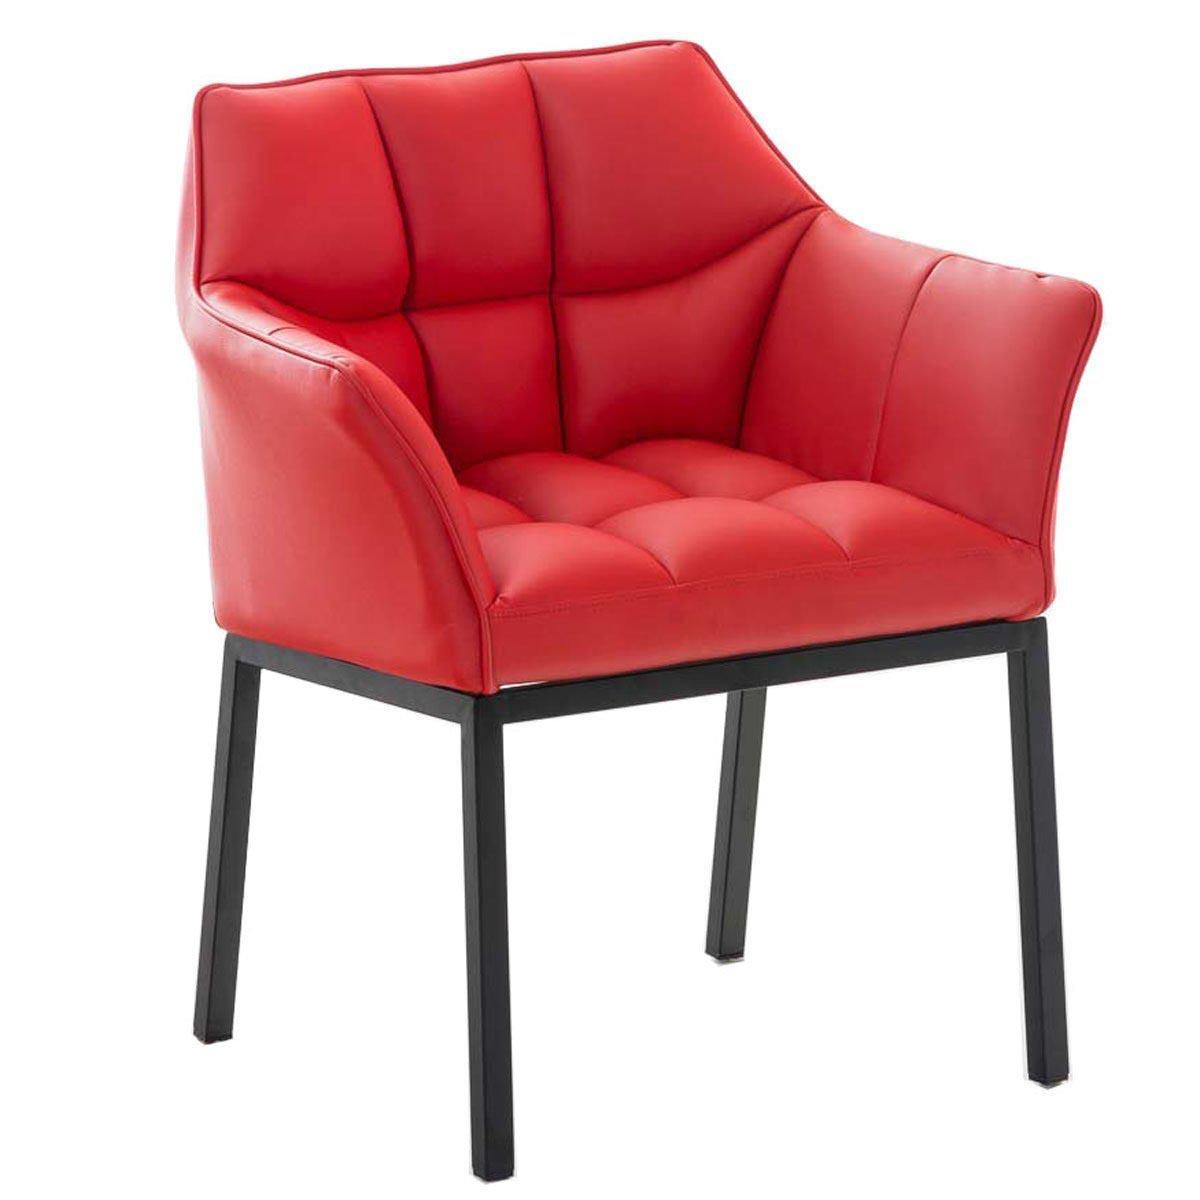 Cadeira de Visita OCTAVIO, Estructura Metálica Preta, Grande Acolchoado em Pele, Cor Vermelho